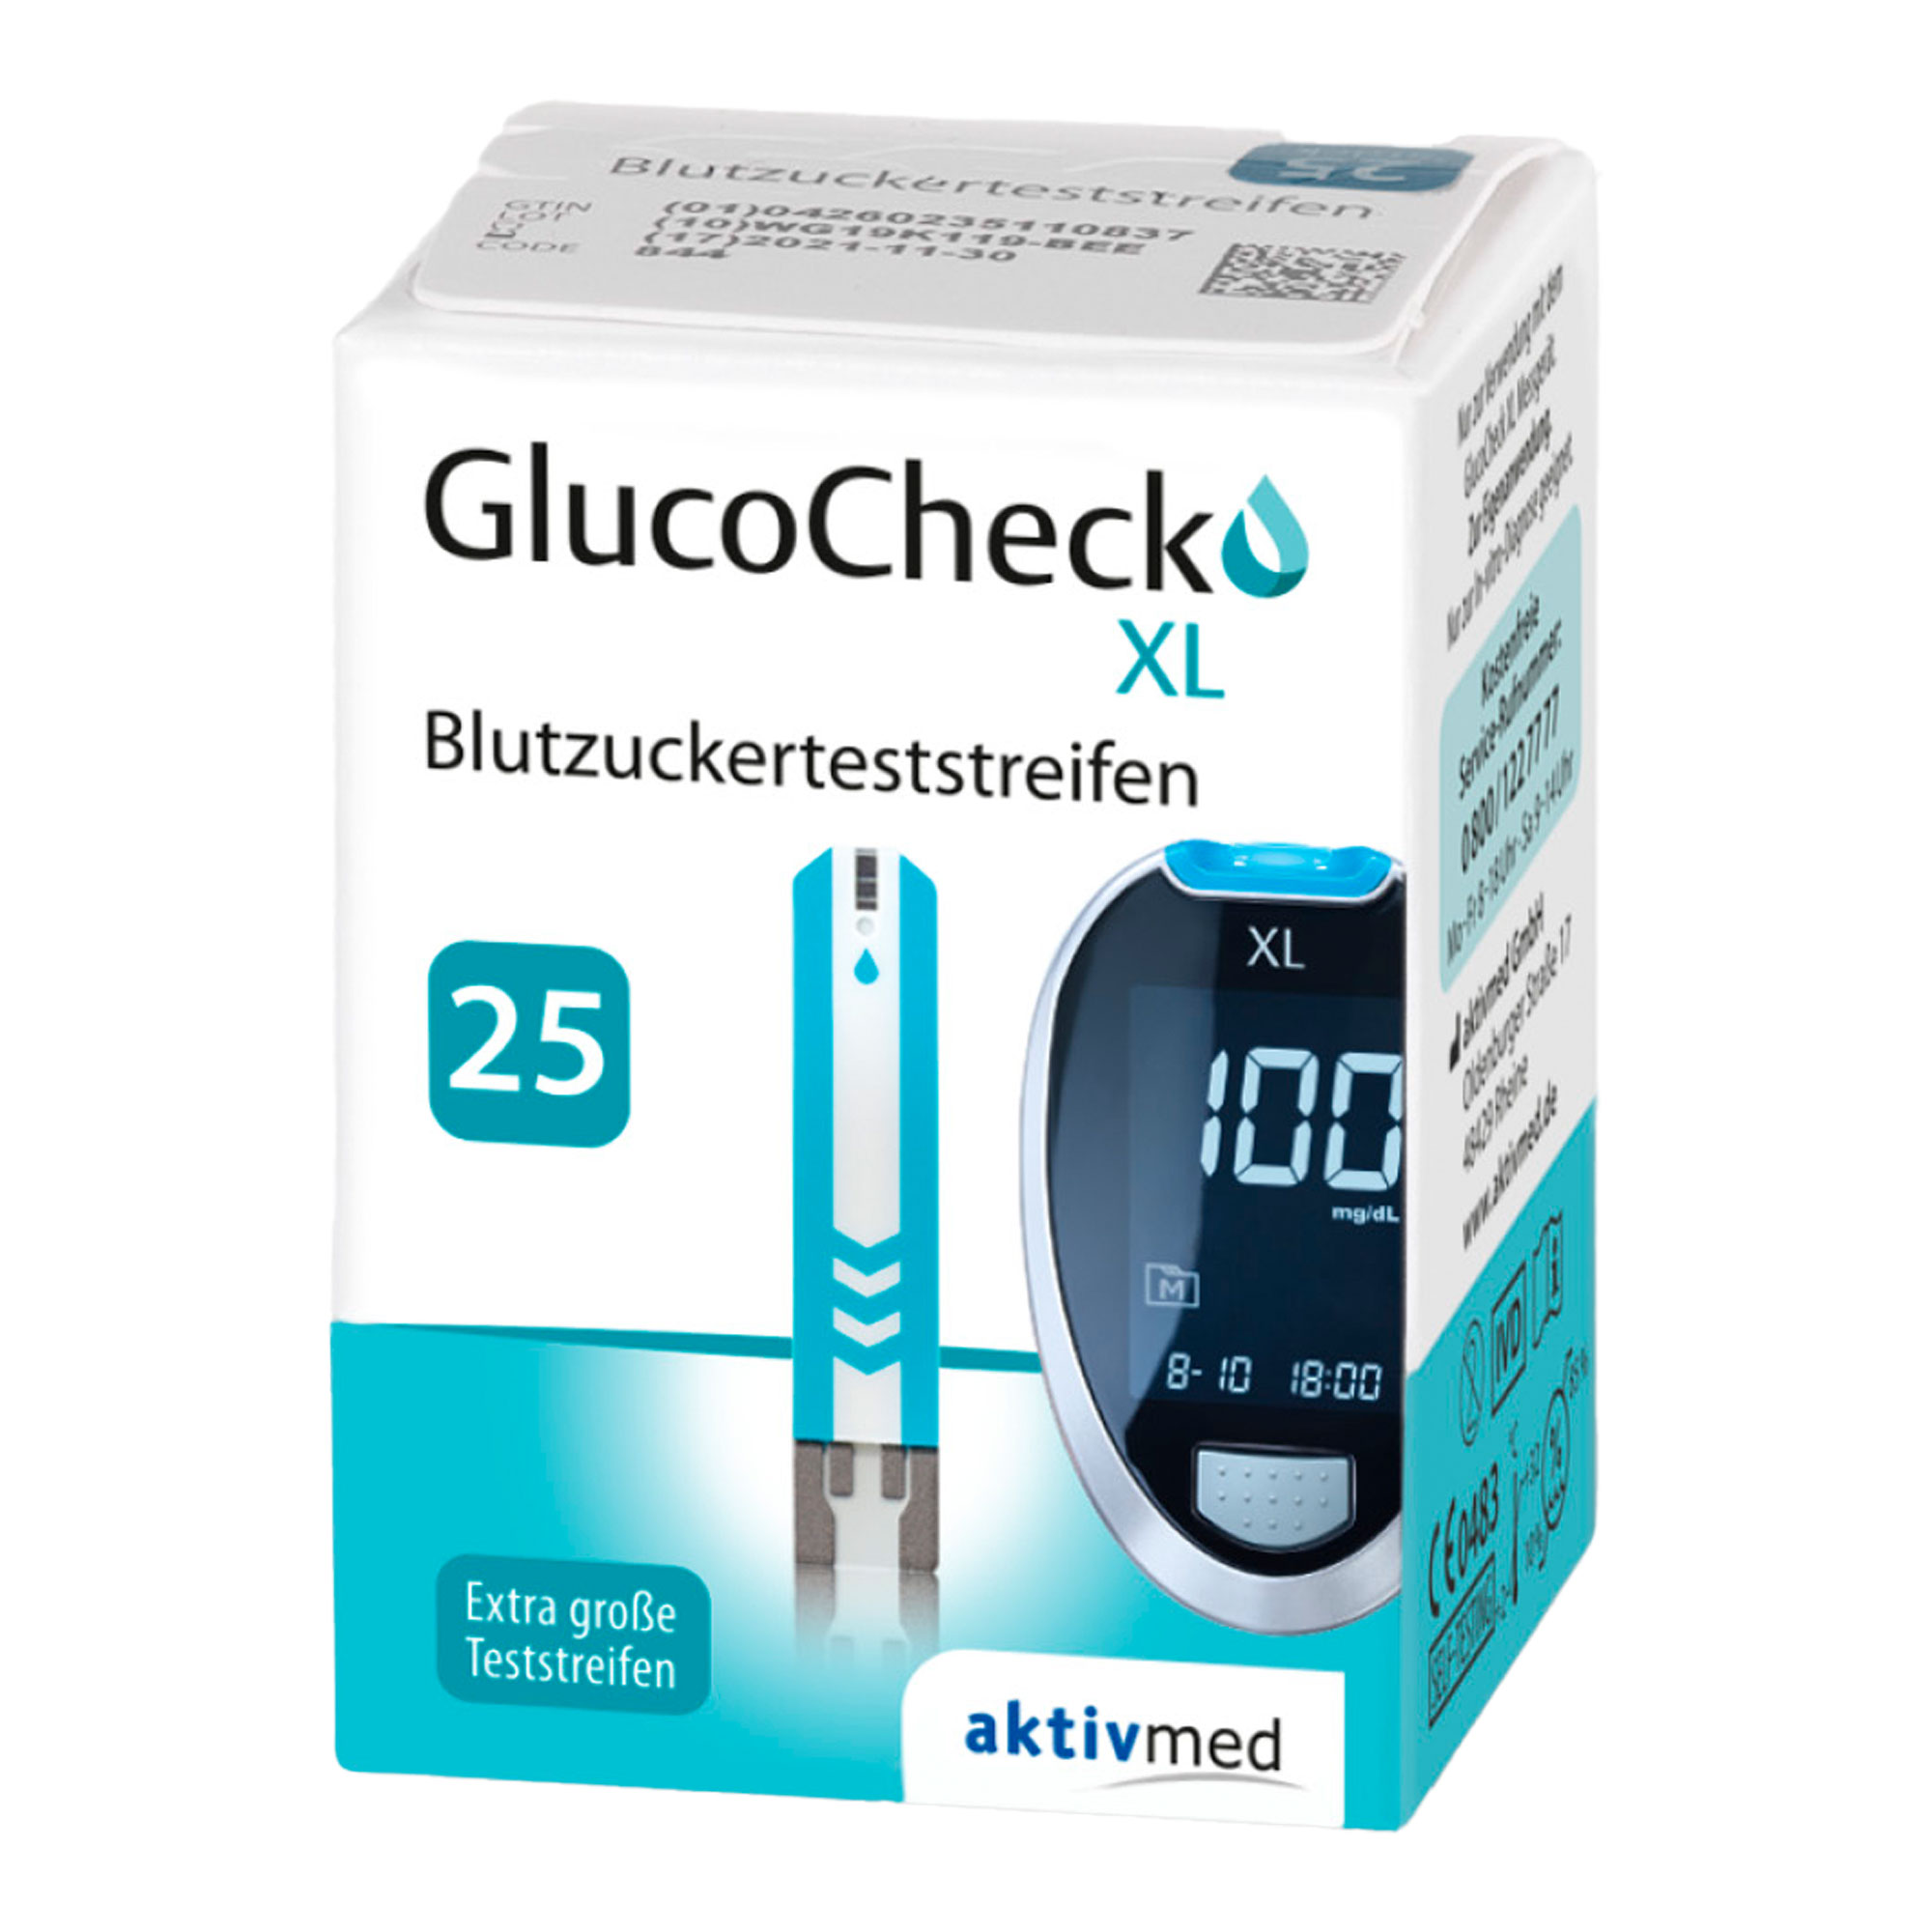 Zur Verwendung mit den GlucoCheck XL Blutzuckermessgeräten.